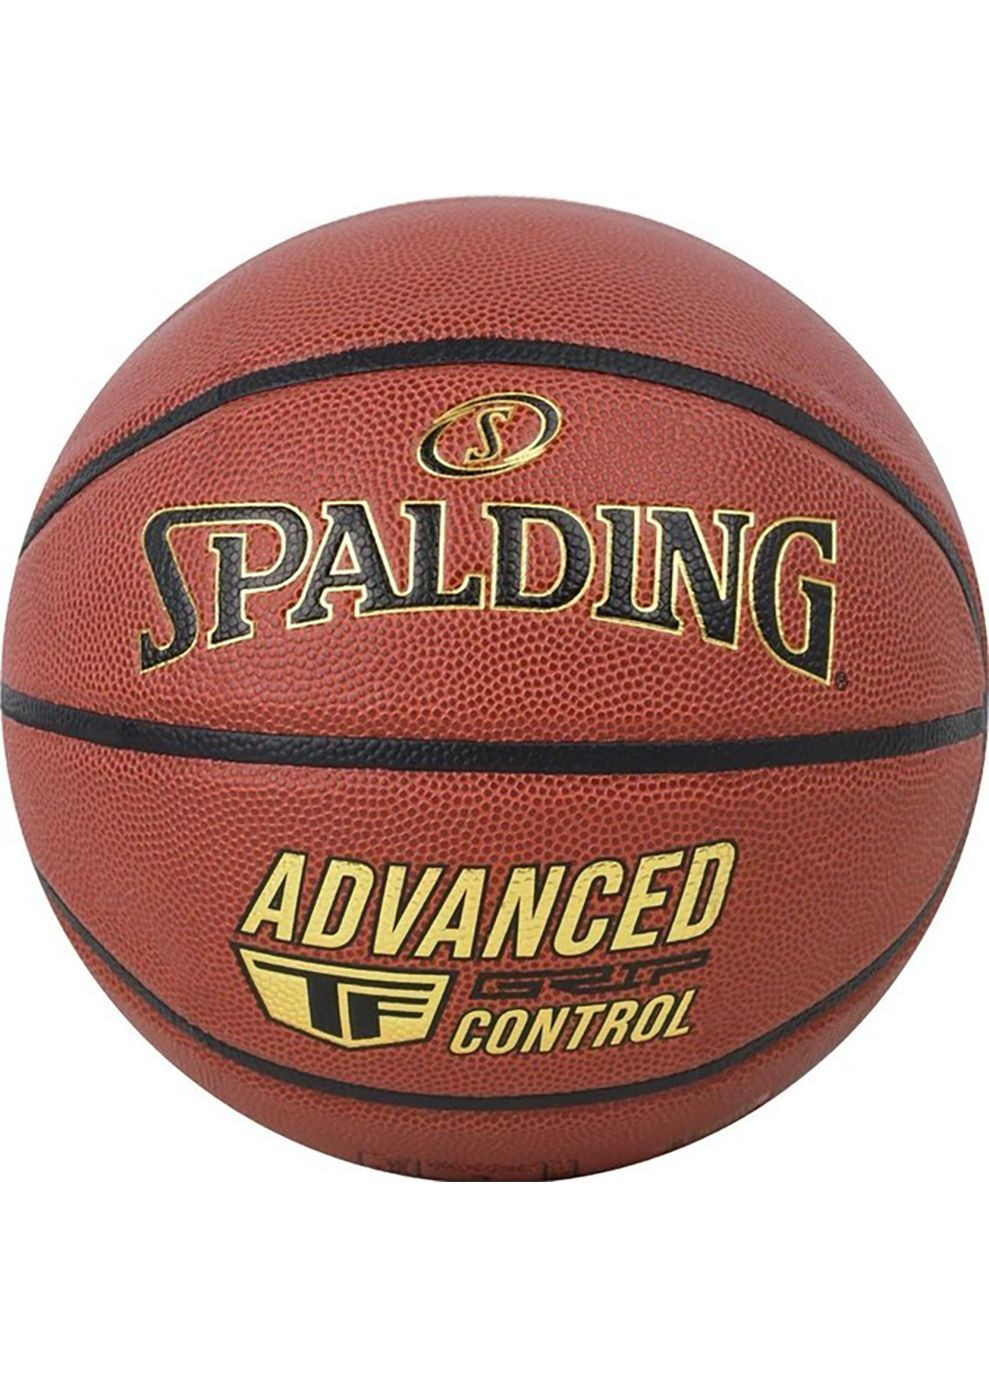 М'яч баскетбольний Advanced Grip Control помаранчевий Уні 7 Spalding (268746945)